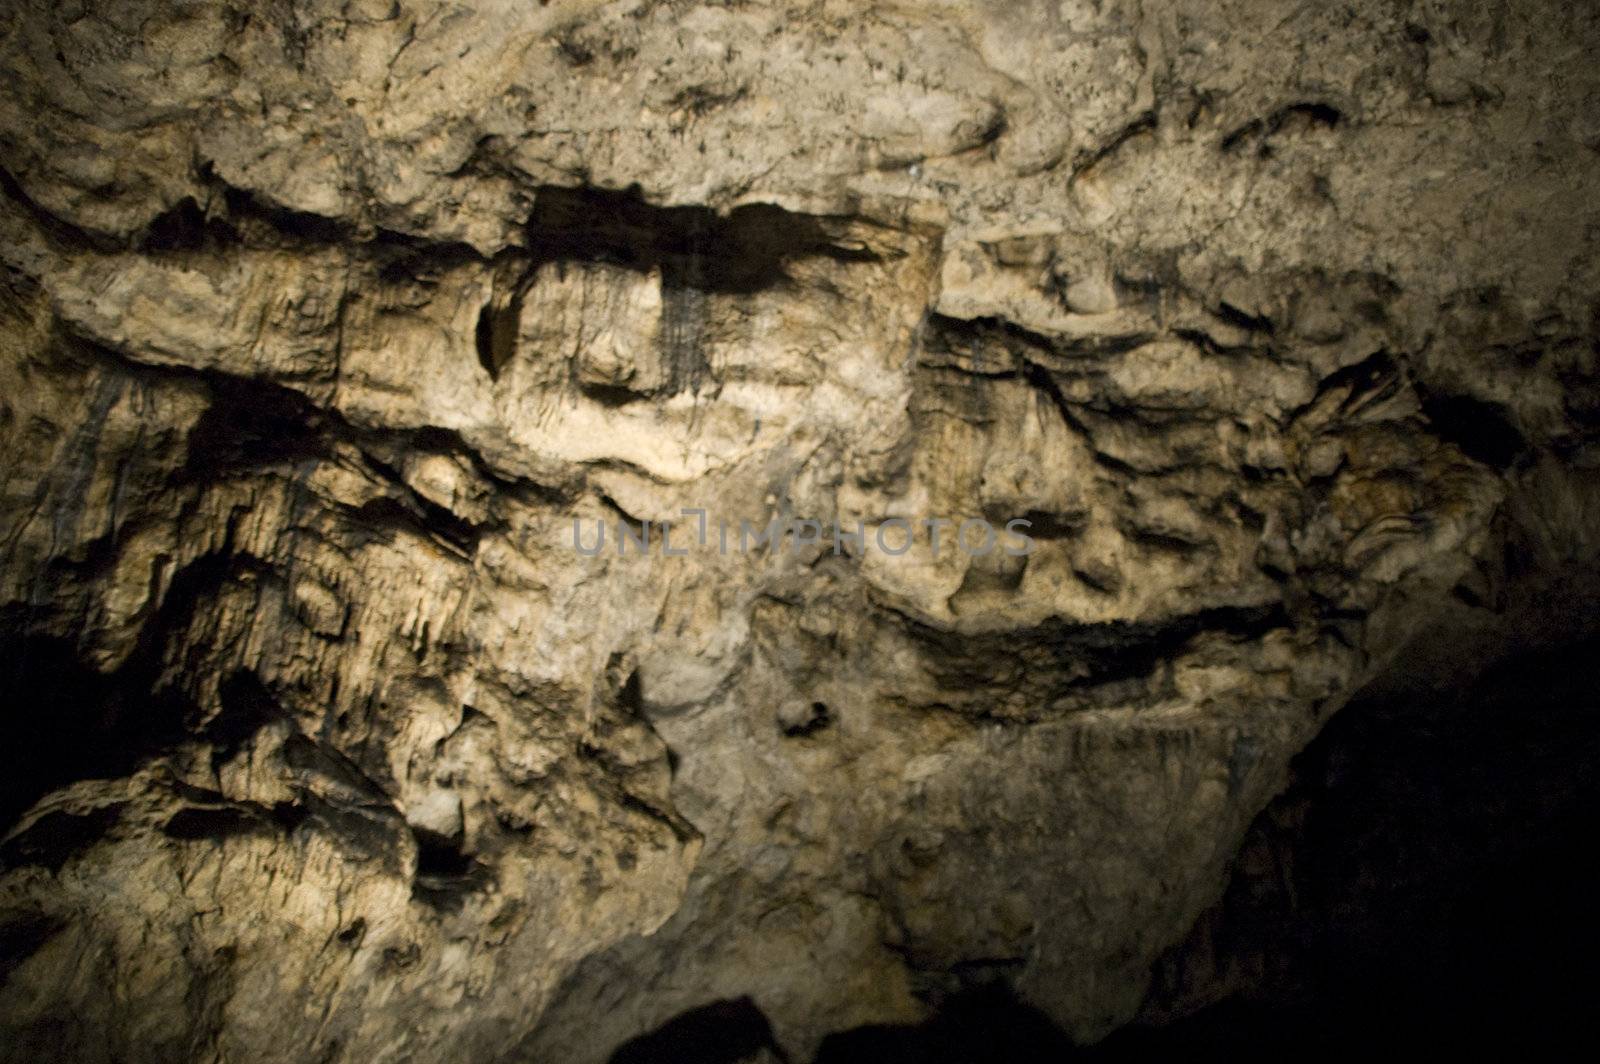 cave in ojcowski national park in poland